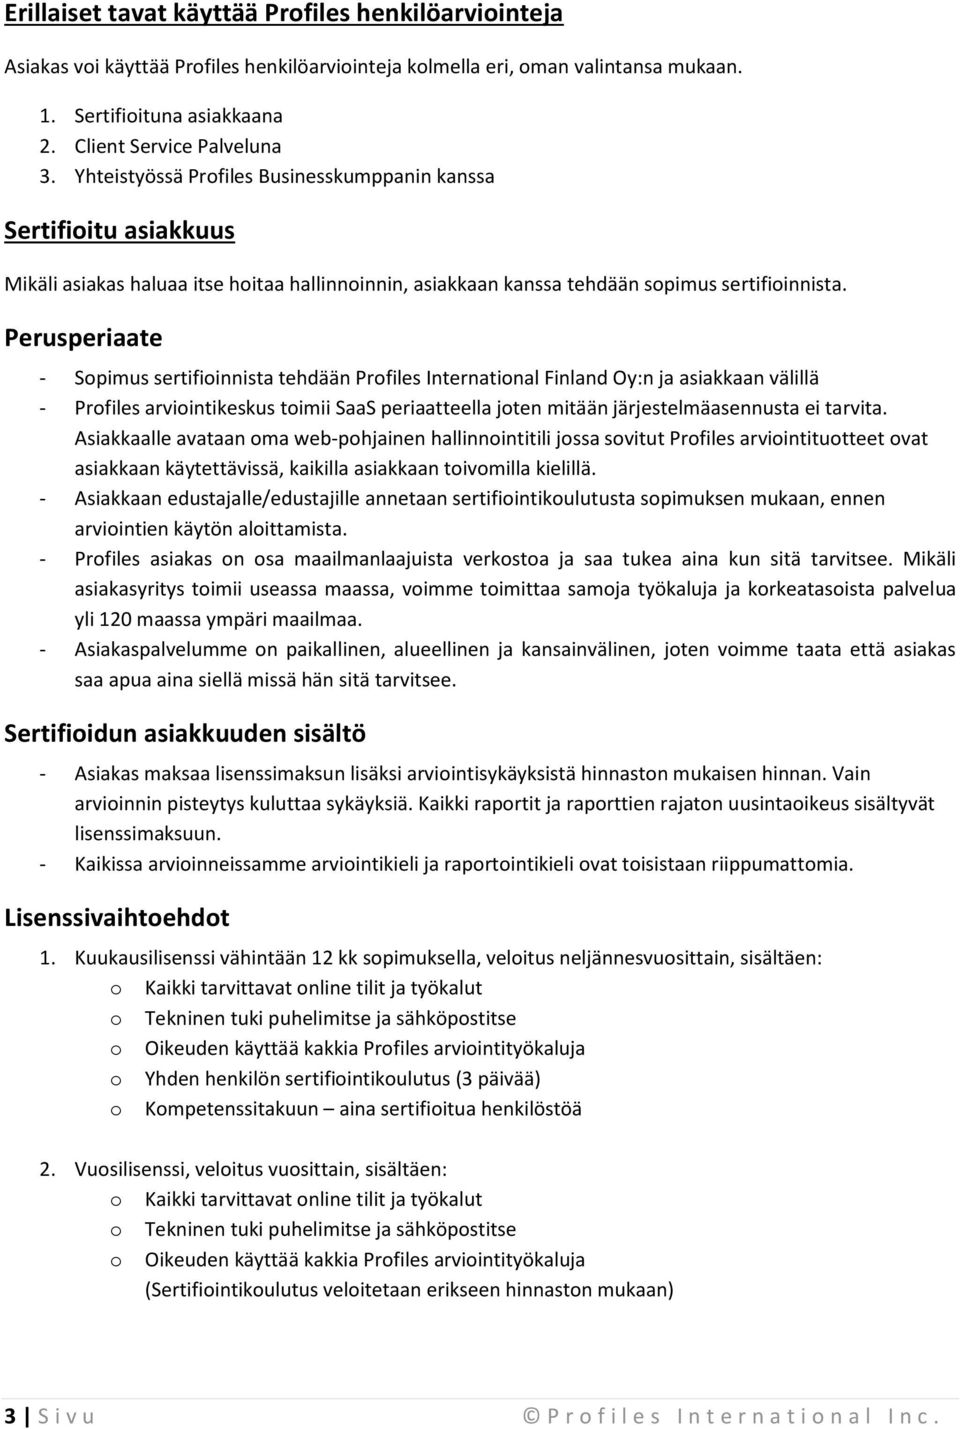 Perusperiaate - Sopimus sertifioinnista tehdään Profiles International Finland Oy:n ja asiakkaan välillä - Profiles arviointikeskus toimii SaaS periaatteella joten mitään järjestelmäasennusta ei